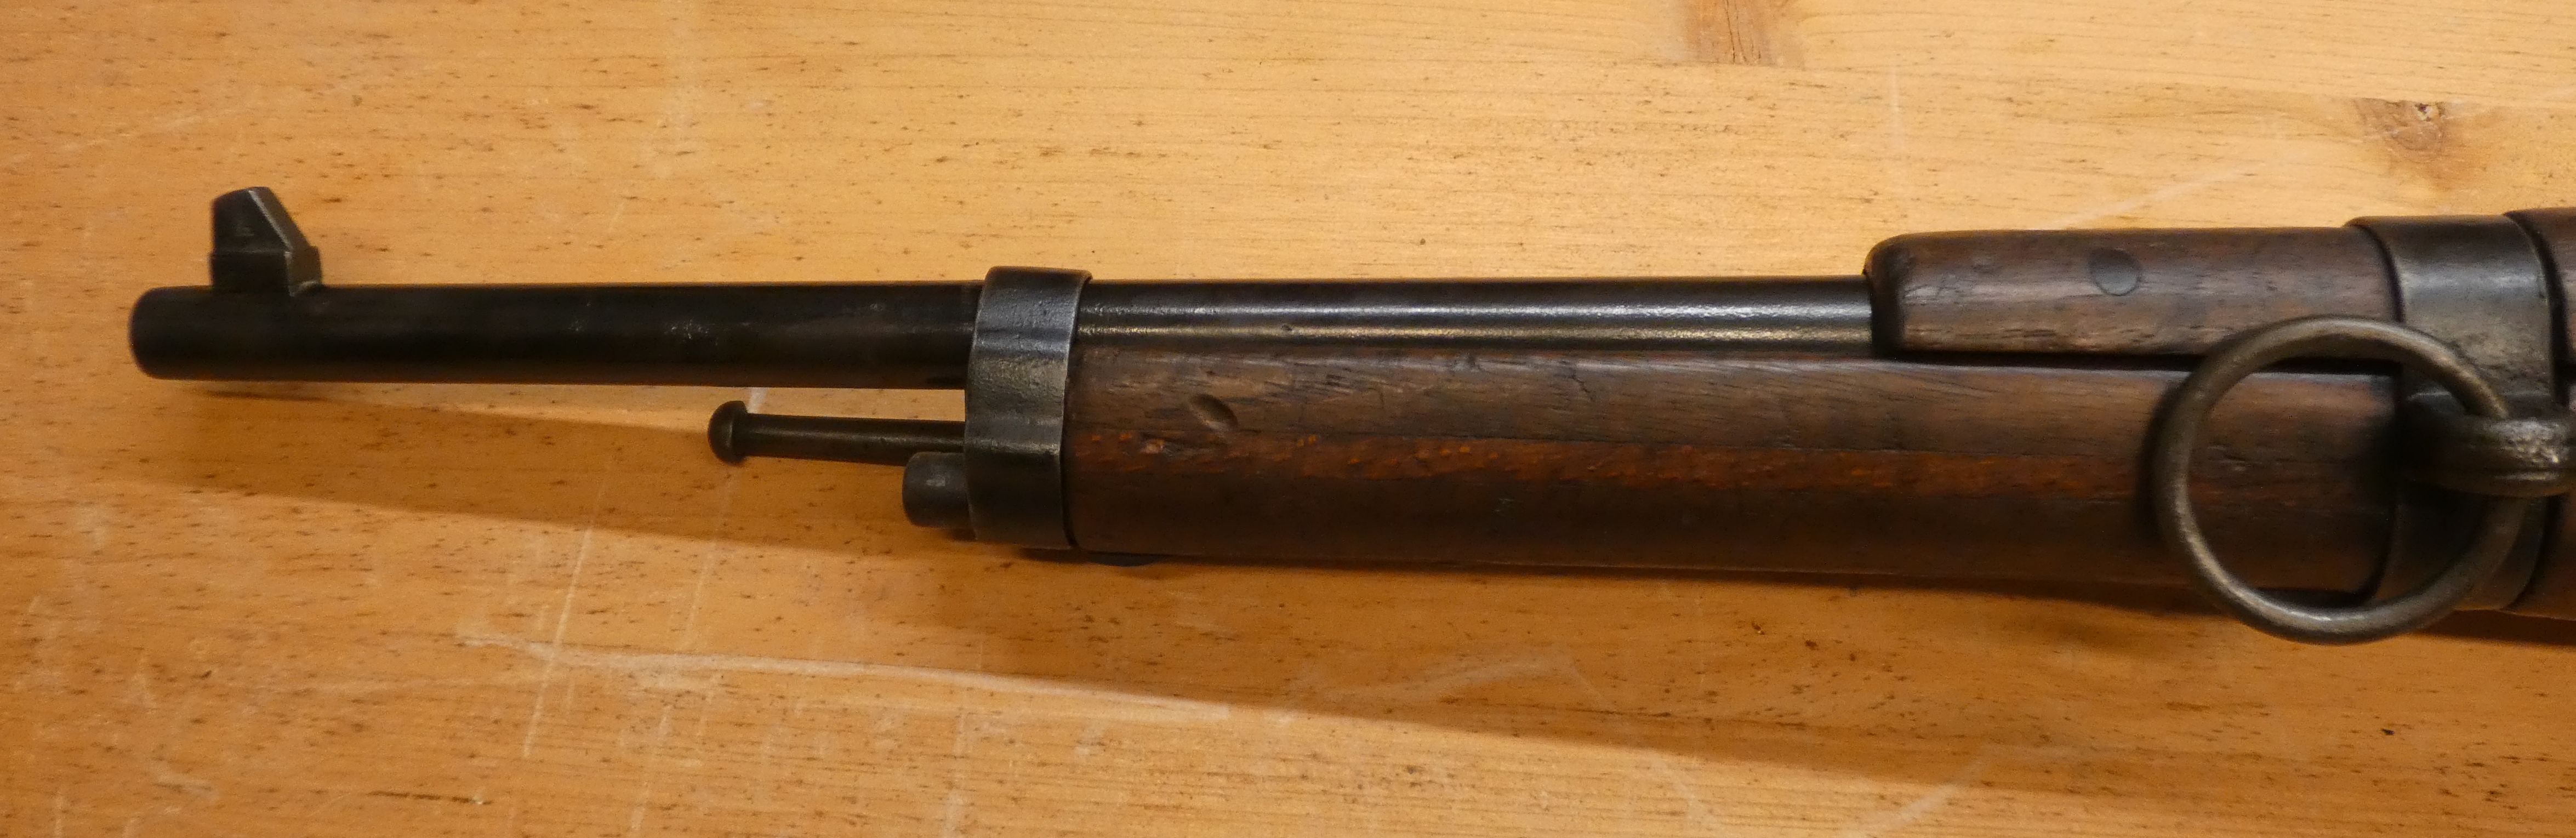 présentation d'une carabine Mle 1890 transformée 1916 24